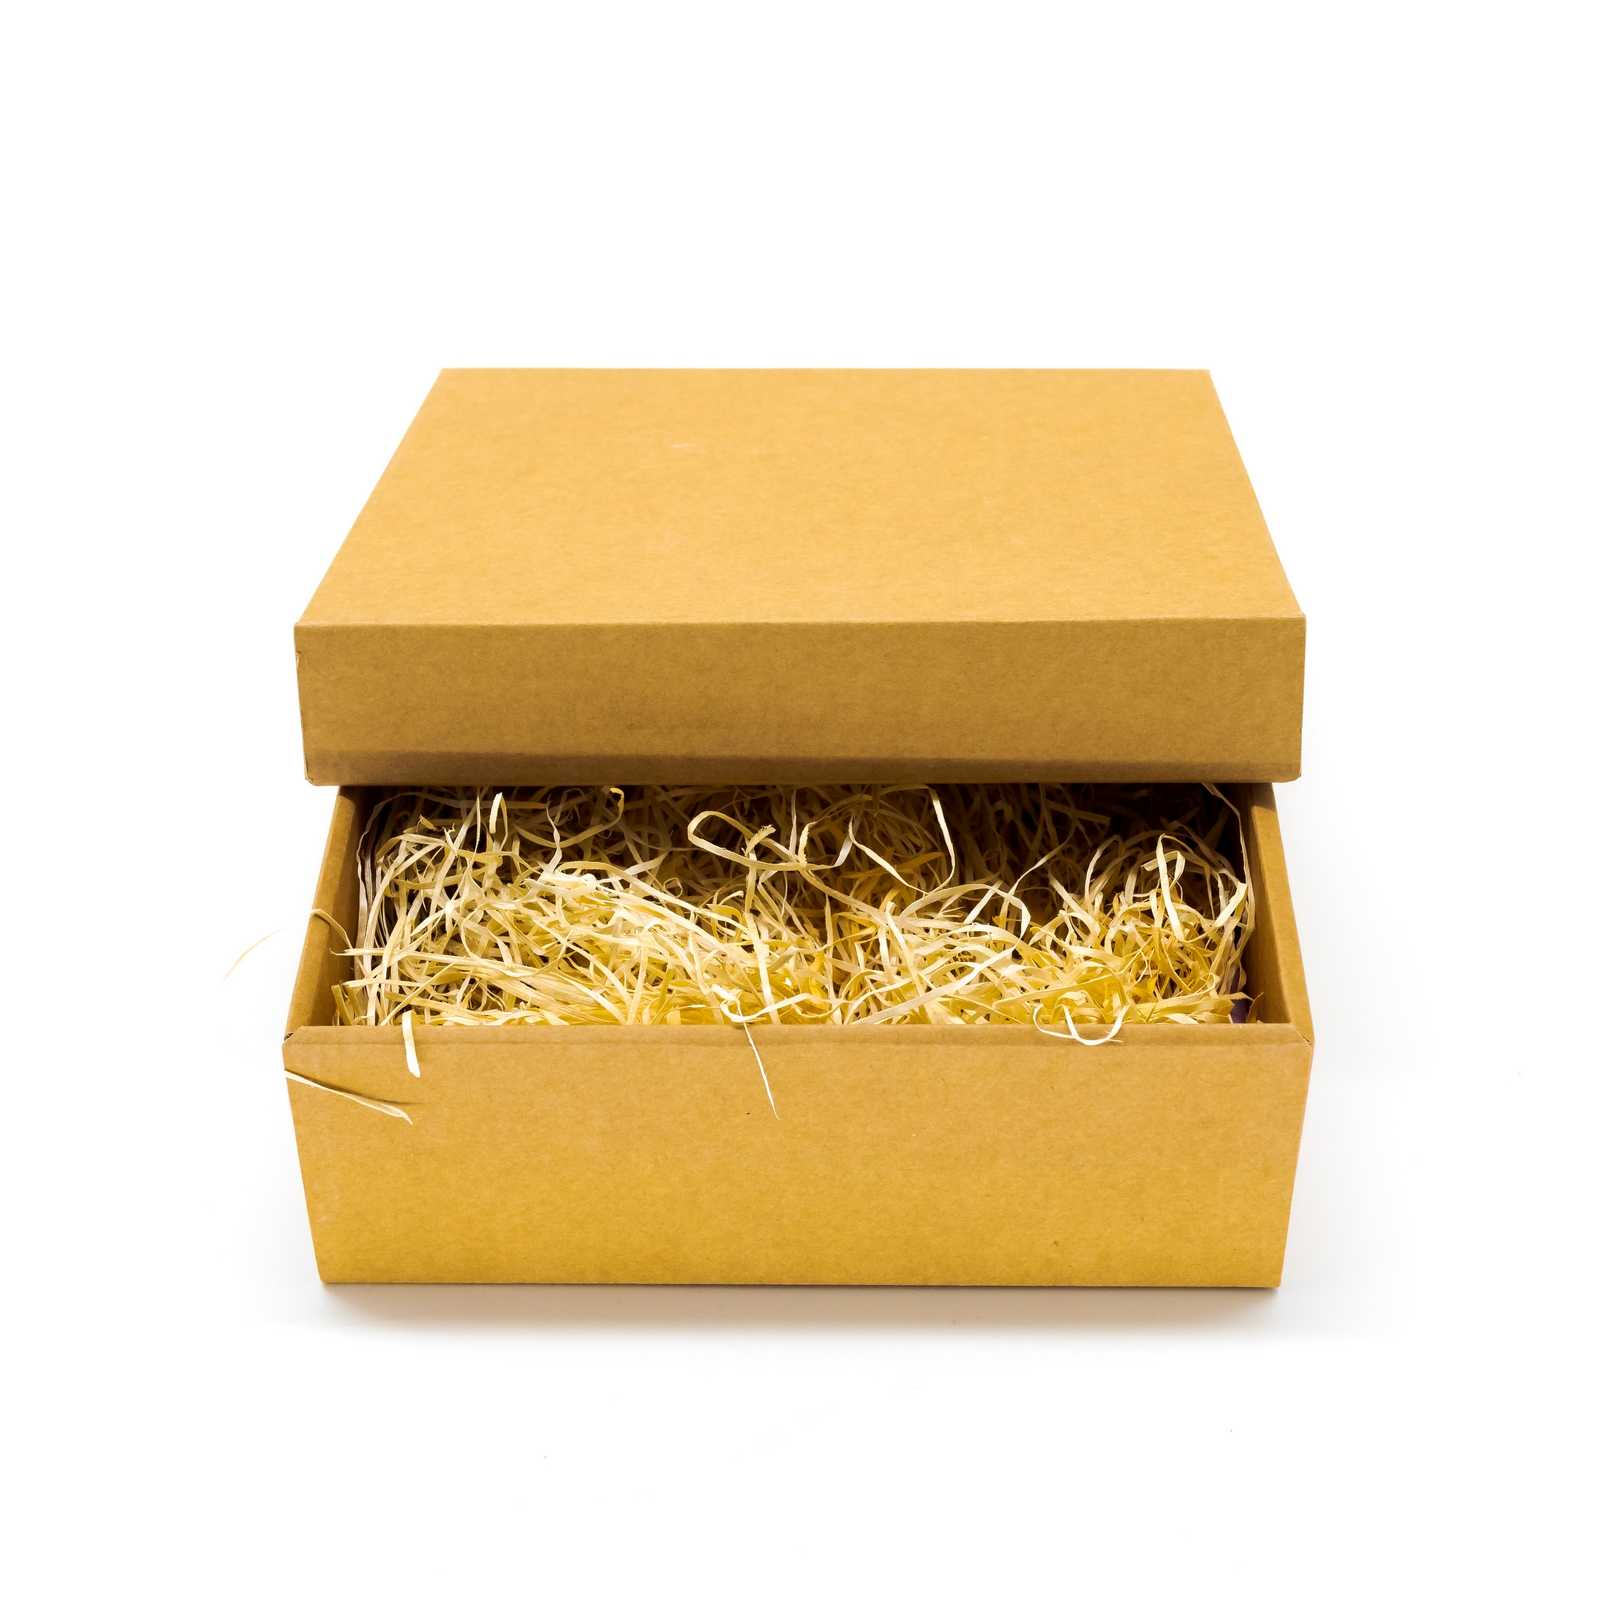 Darčekové krabice, krabice s potlačou, krabice na zákusky, kartónové krabice, krabice na koláče, papierové krabice